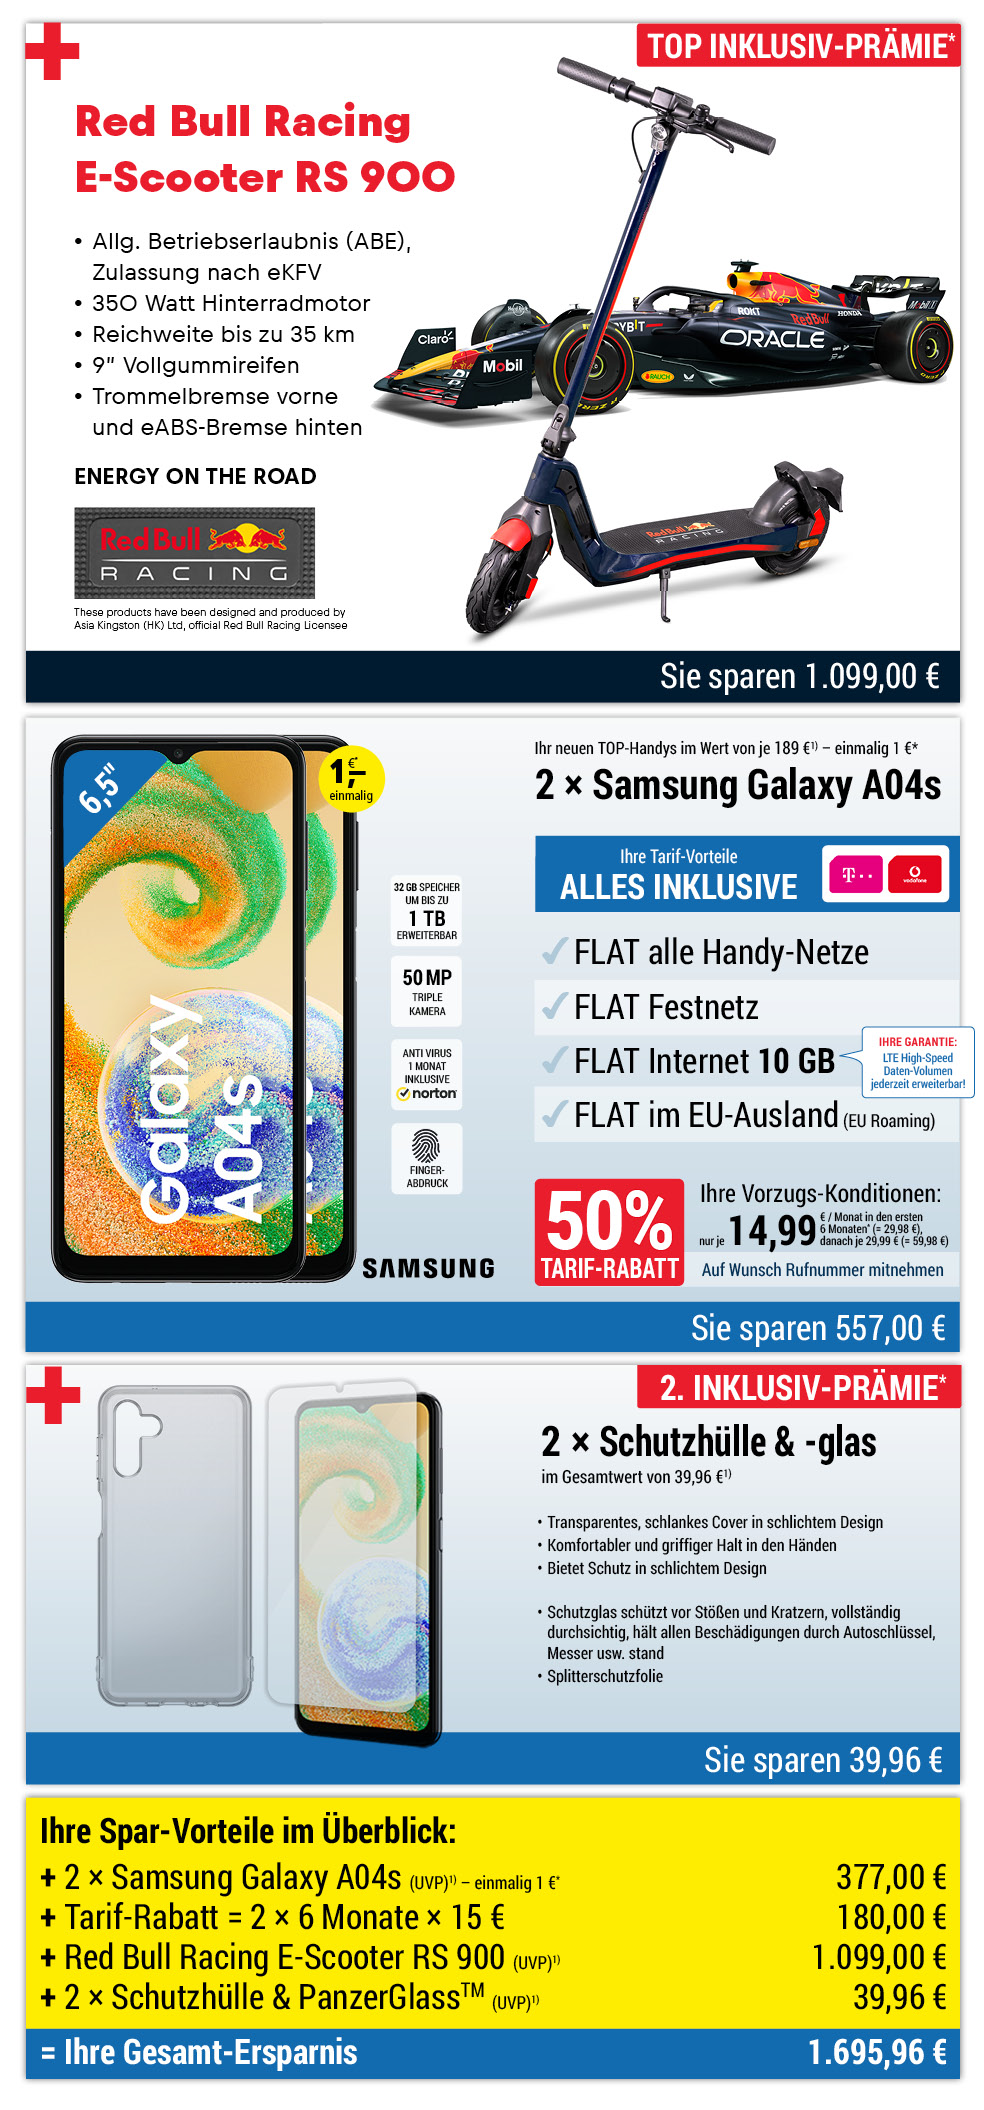 Für nur 1 €*: 2 × Samsung Galaxy A04s + Zubehör + Red Bull E-Scooter INKLUSIVE + Handyverträge mit ALL NET FLAT für je 14,99 €/Monat in den ersten 6 Monaten